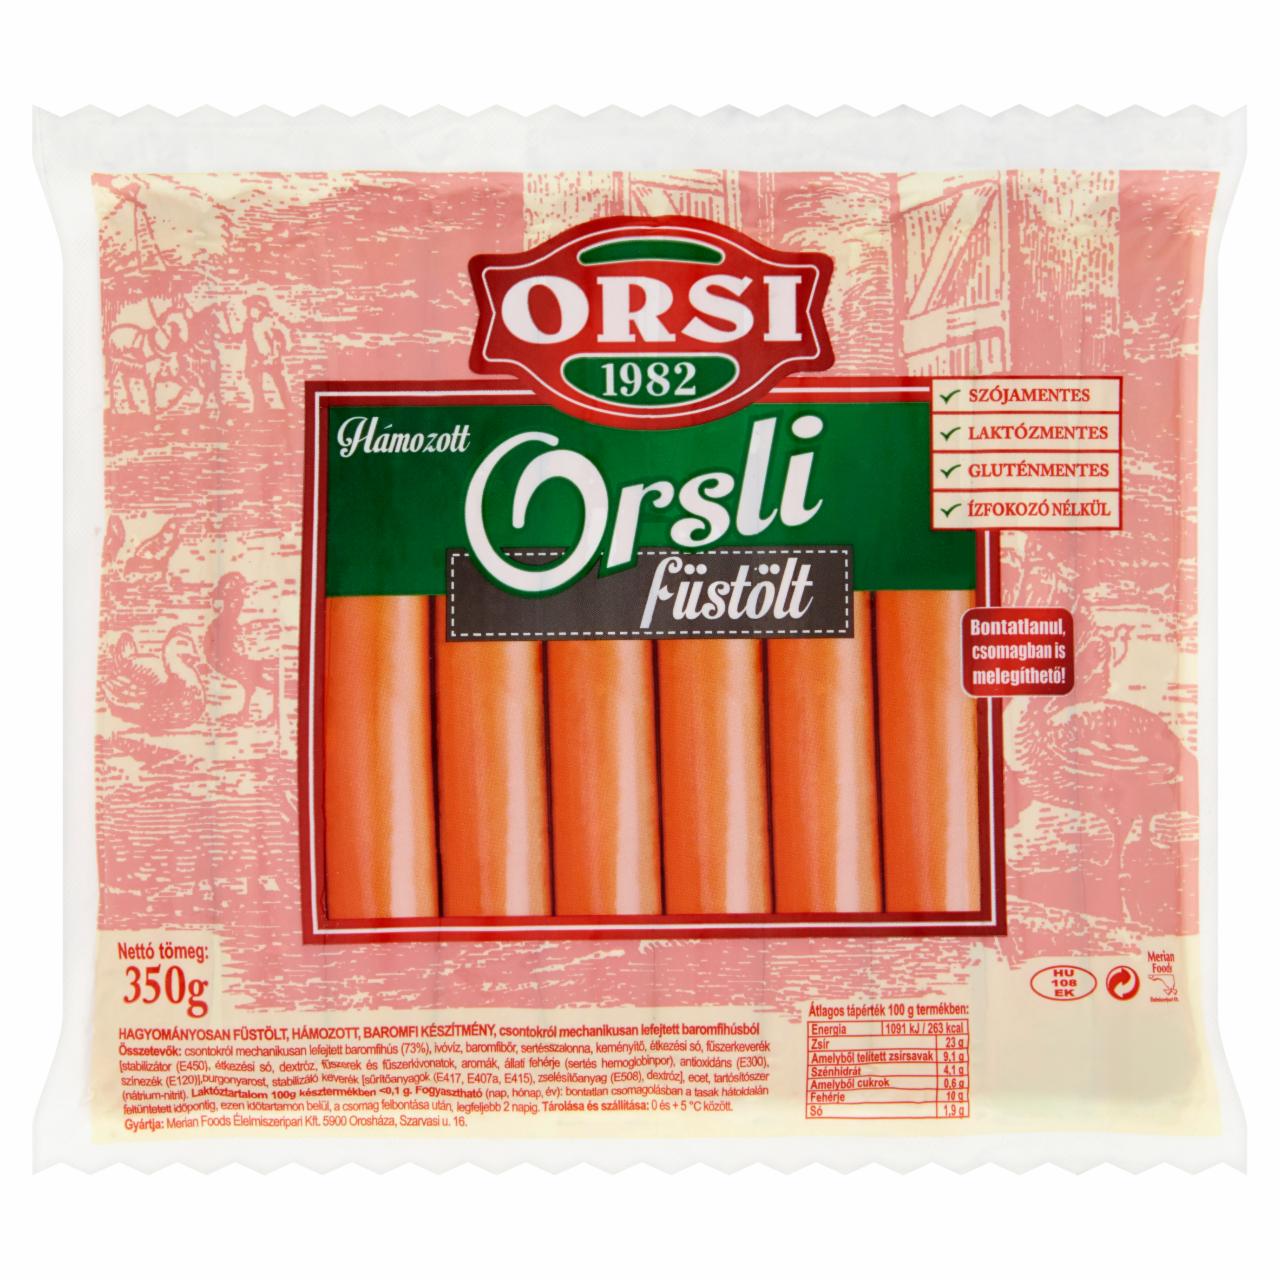 Photo - Orsi Peeled Smoked Orsli 350 g